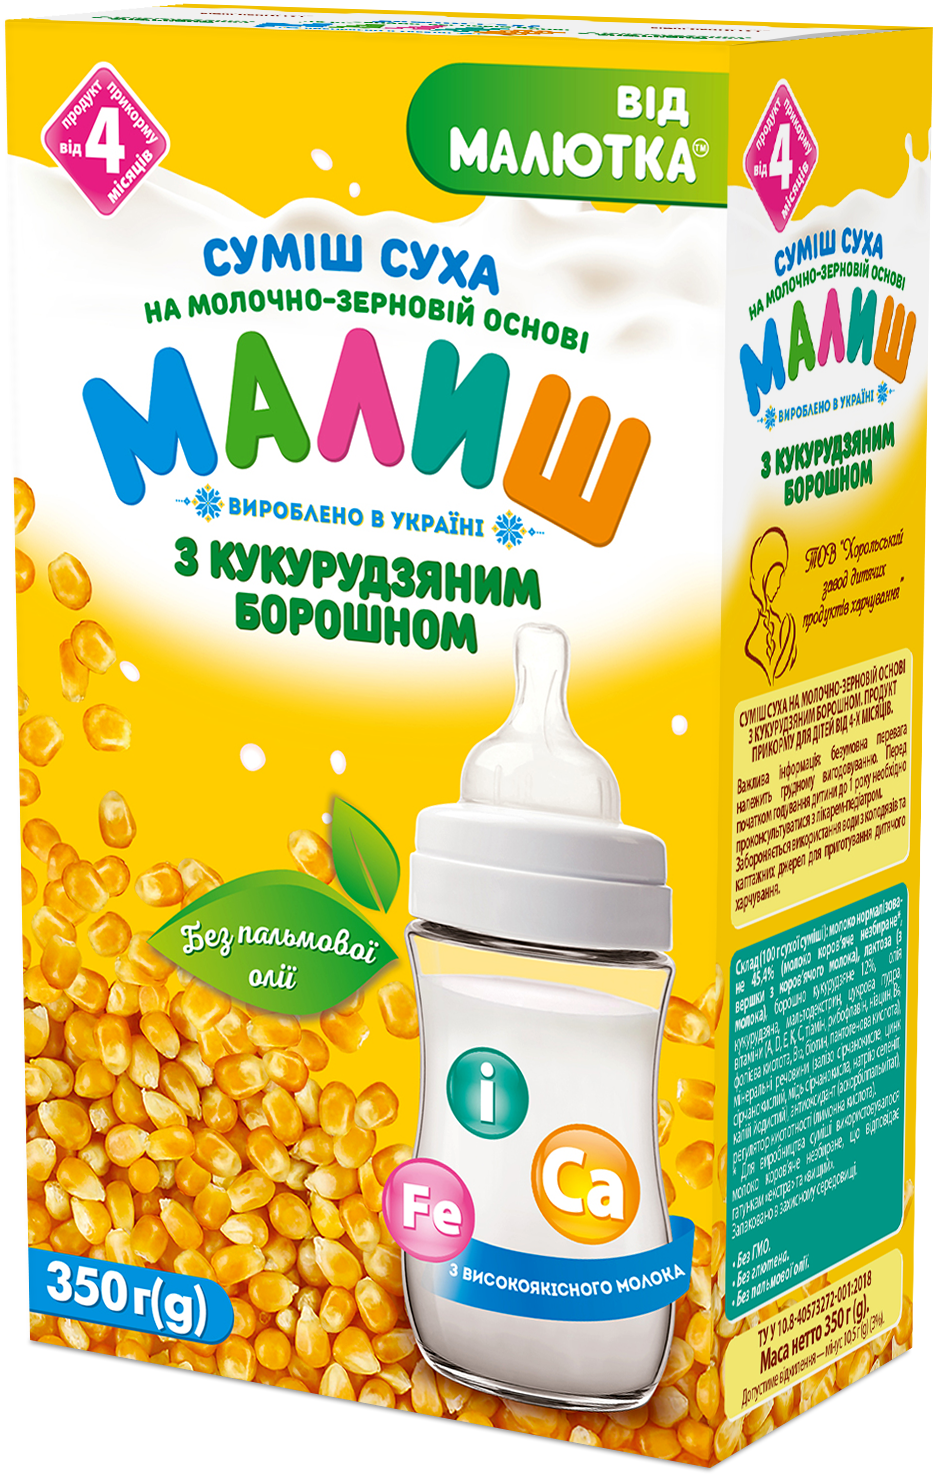 Суміш суха на молочно-зерновій основі з кукурудзяним борошном. Продукт прикорму для дітей від 4-х місяців.